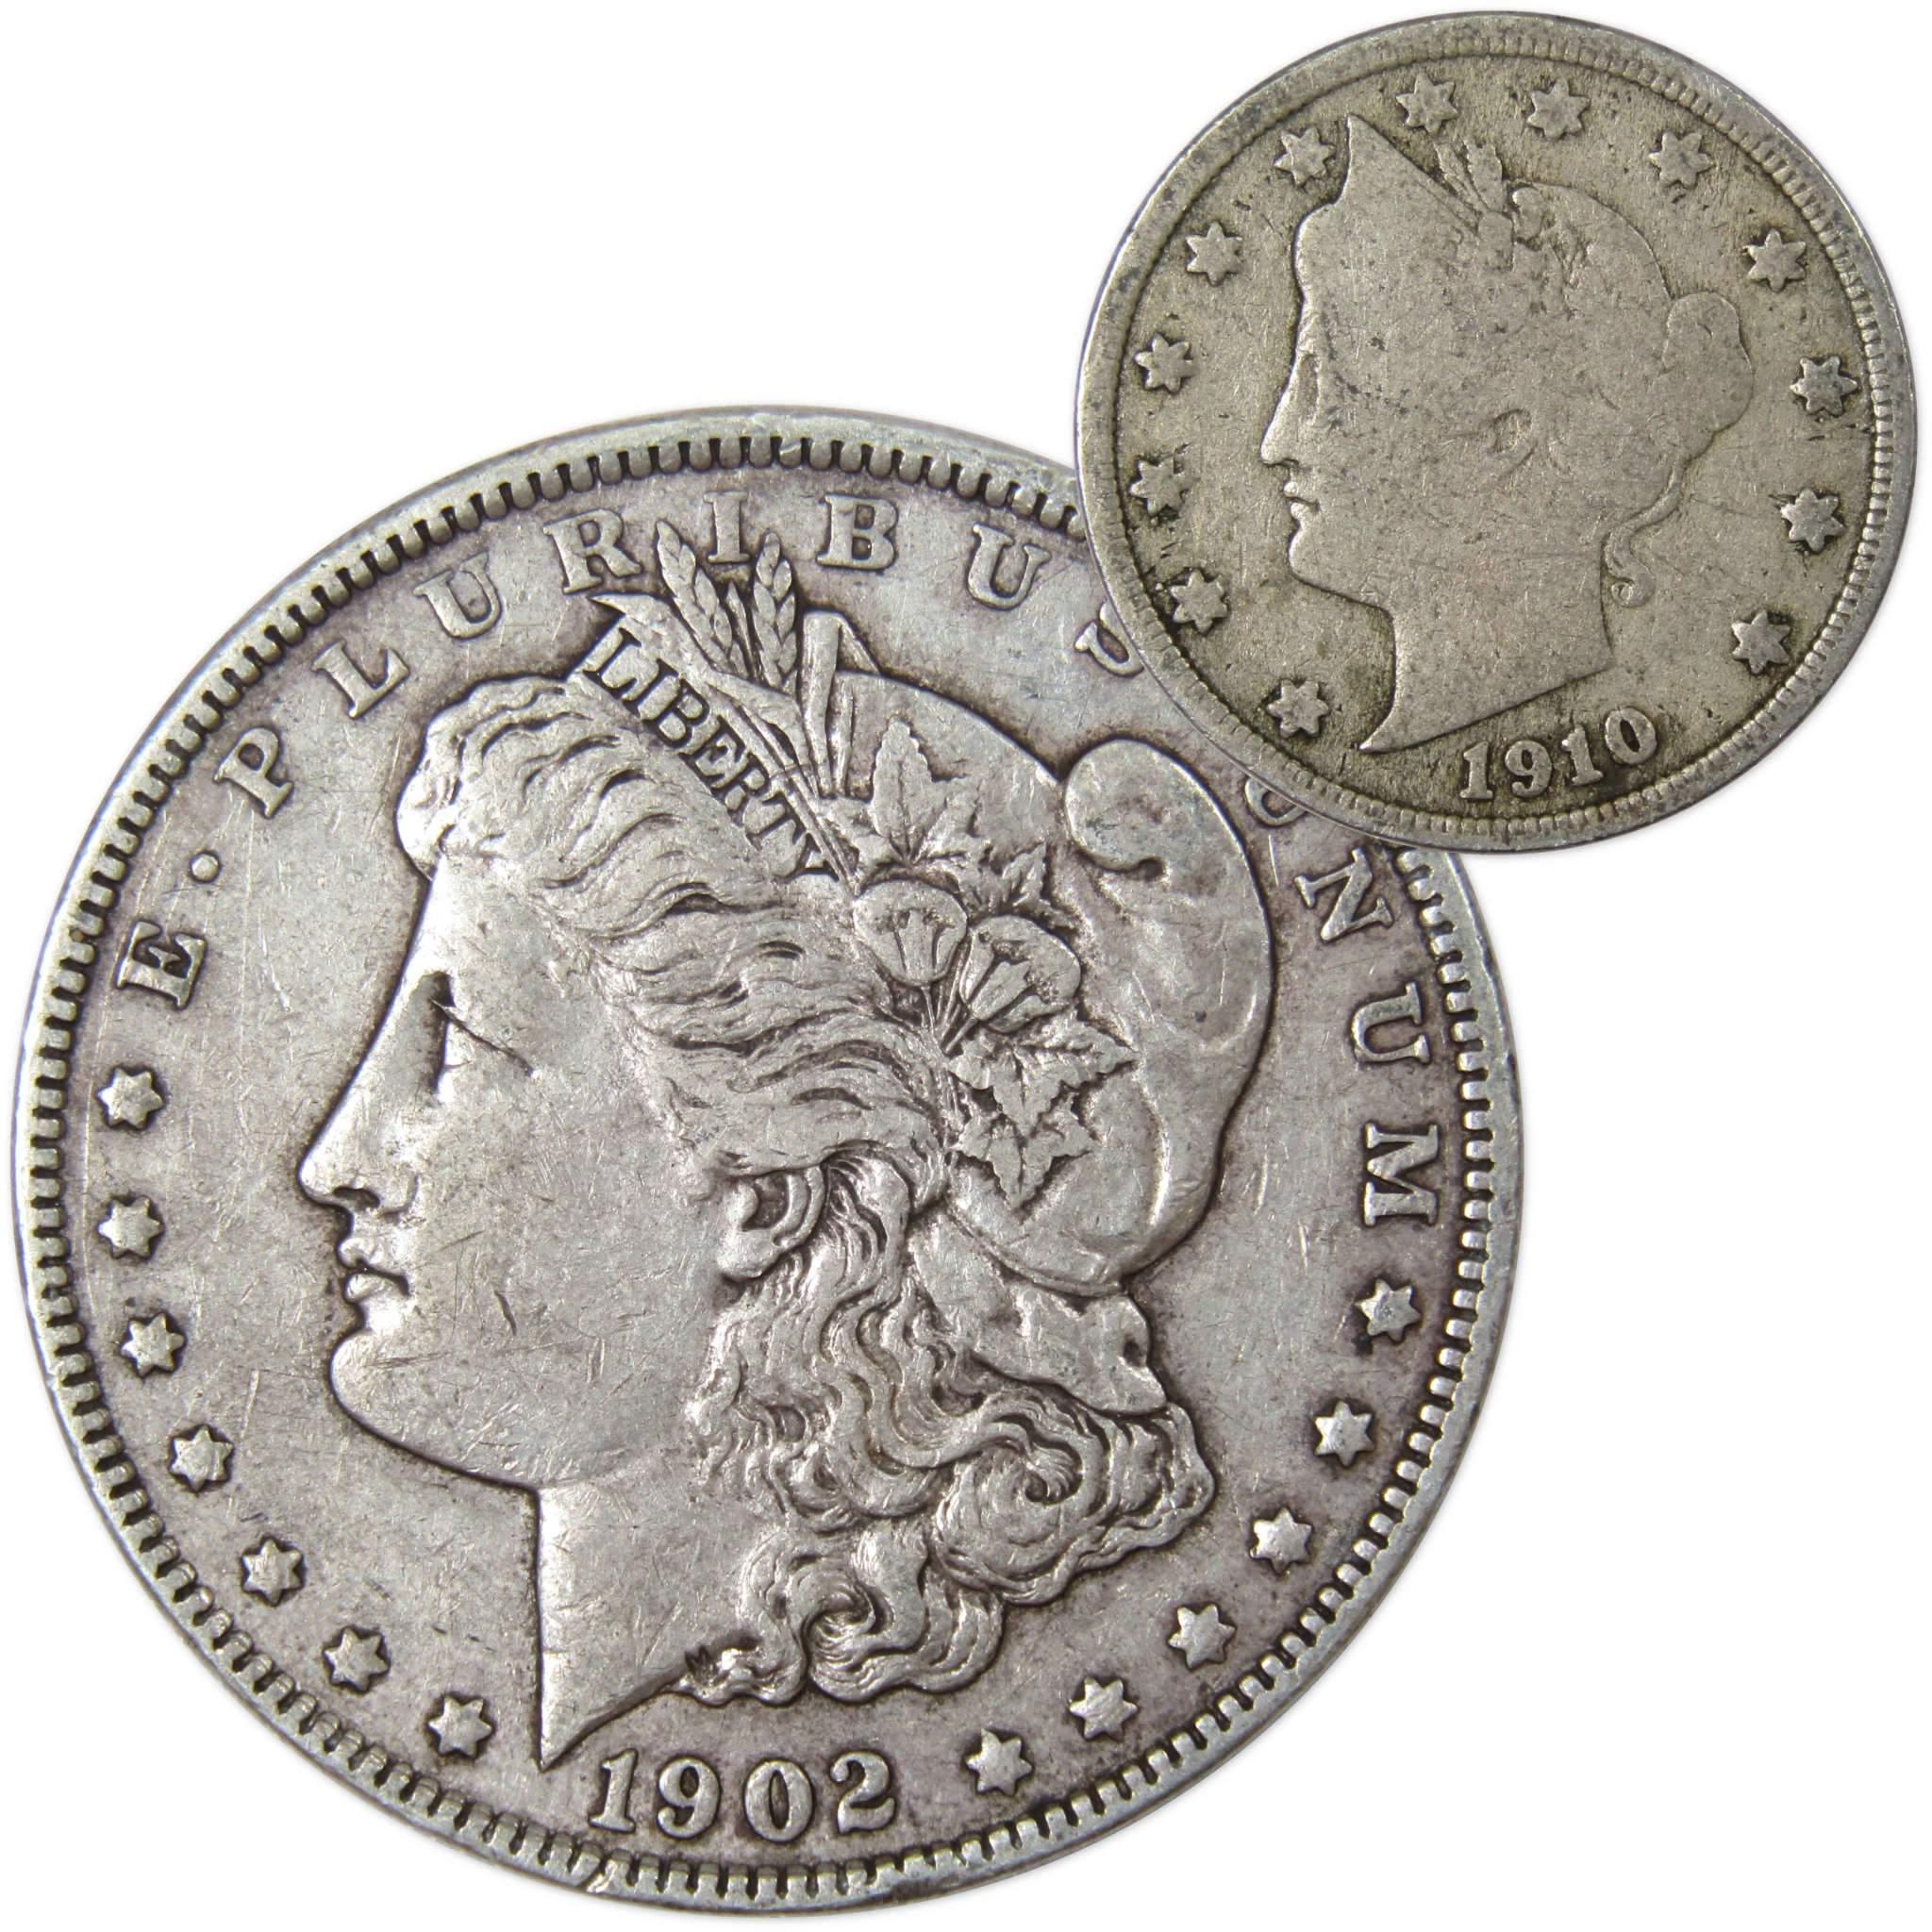 1902 Morgan Dollar VF Very Fine 90% Silver Coin with 1910 Liberty Nickel G Good - Morgan coin - Morgan silver dollar - Morgan silver dollar for sale - Profile Coins &amp; Collectibles